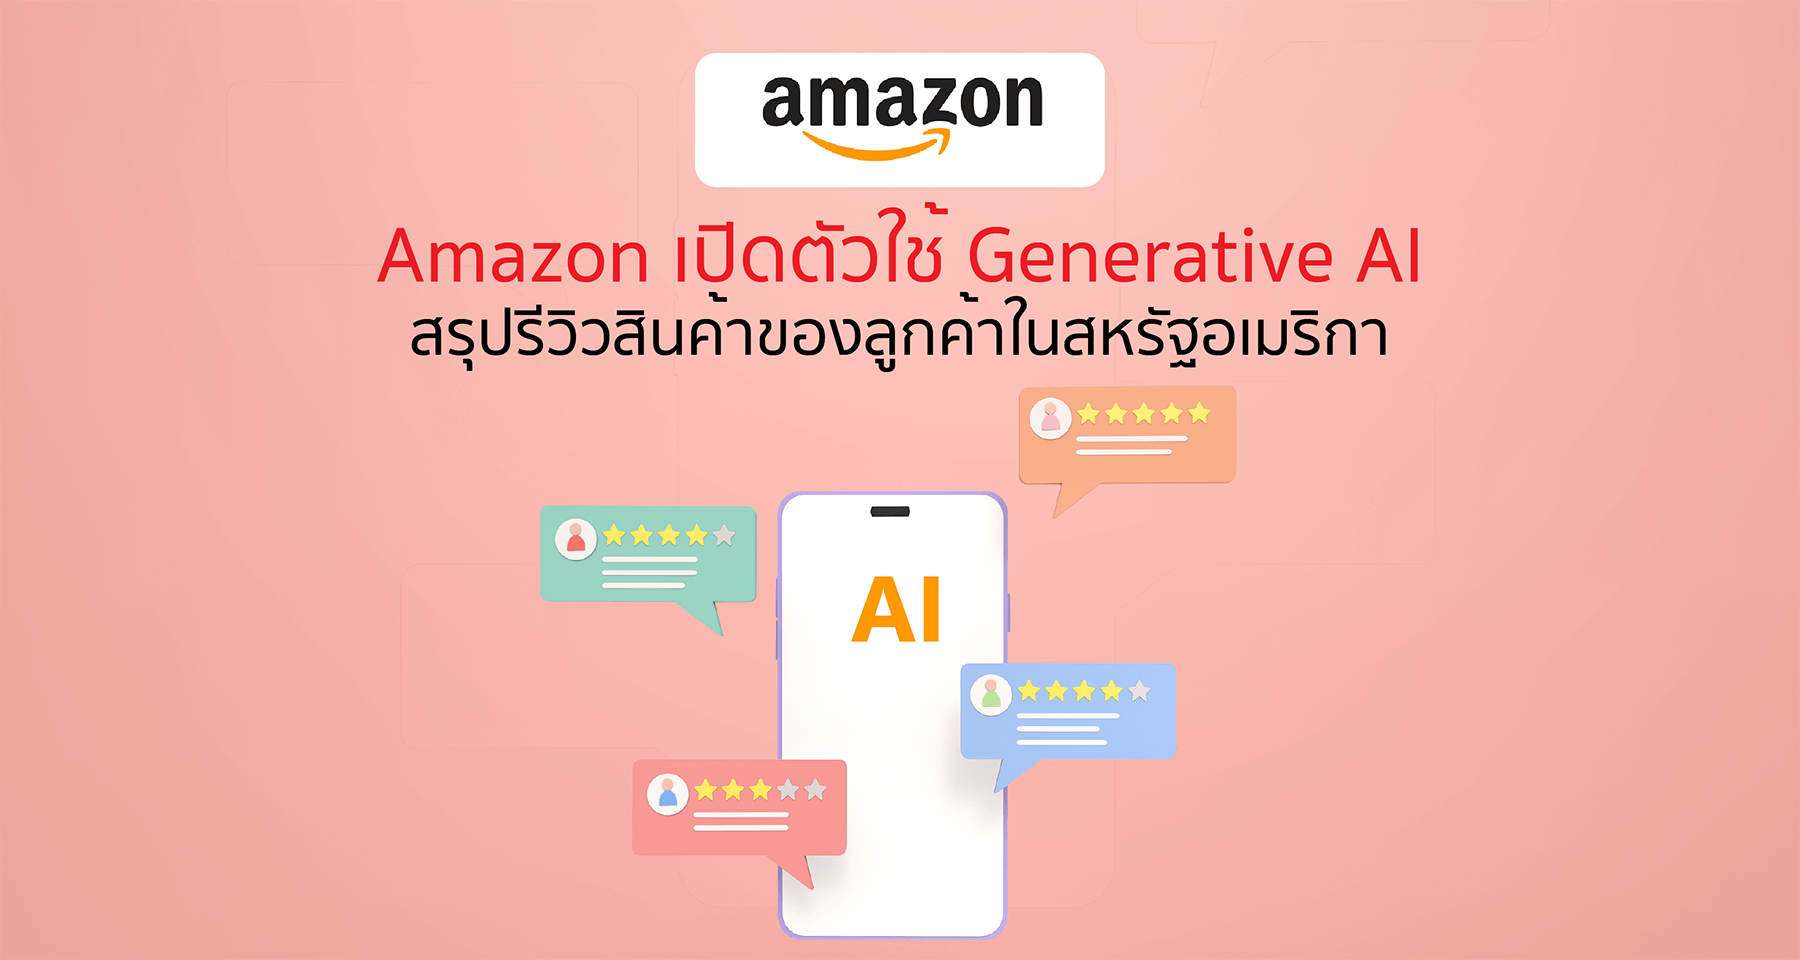 Amazon เปิดตัวใช้ Generative AI สรุปรีวิวสินค้าของลูกค้าในสหรัฐอเมริกา